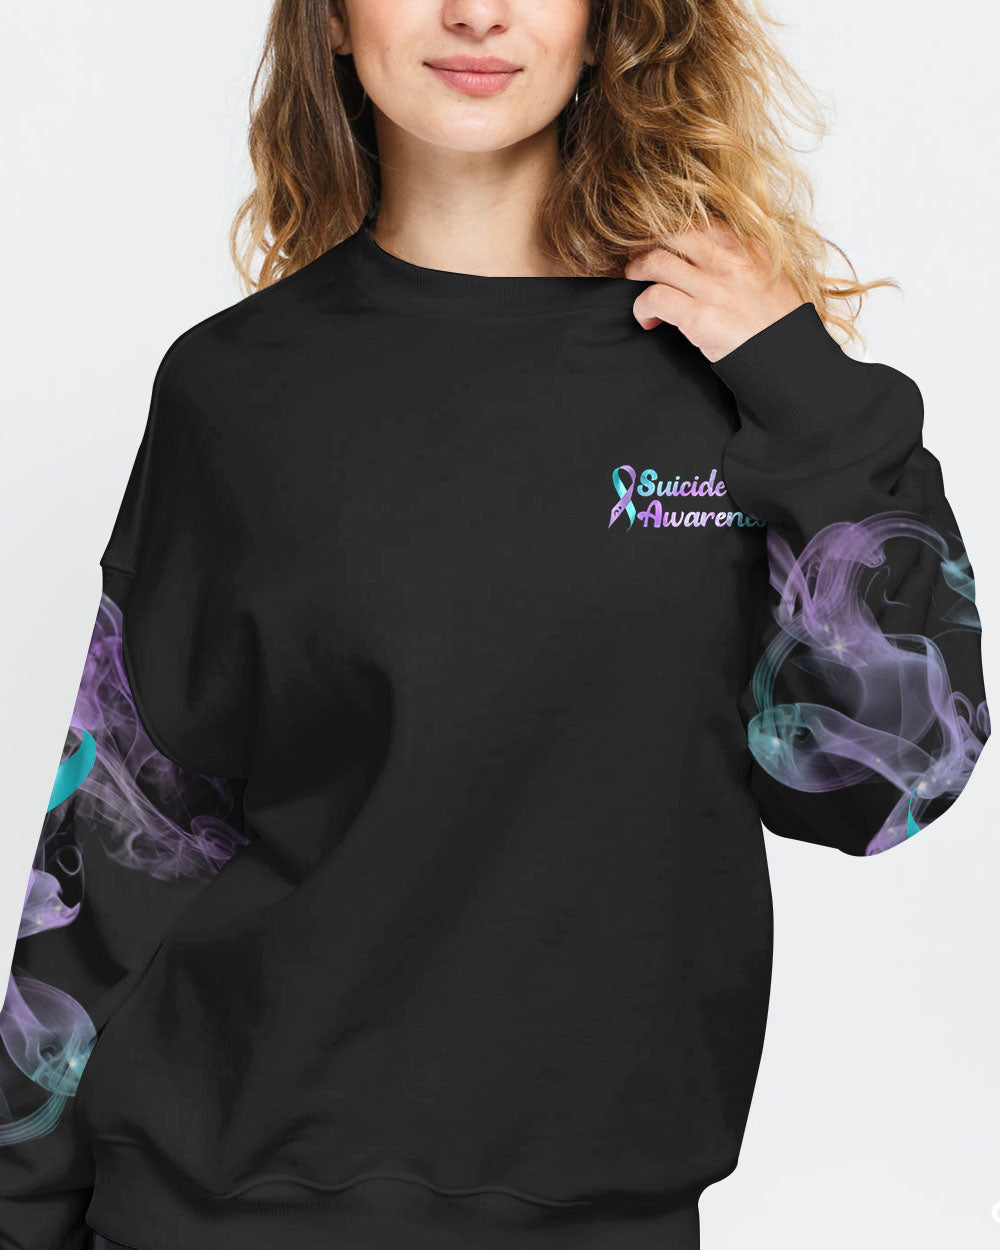 Dragon Flower Women's Suicide Prevention Awareness Sweatshirt